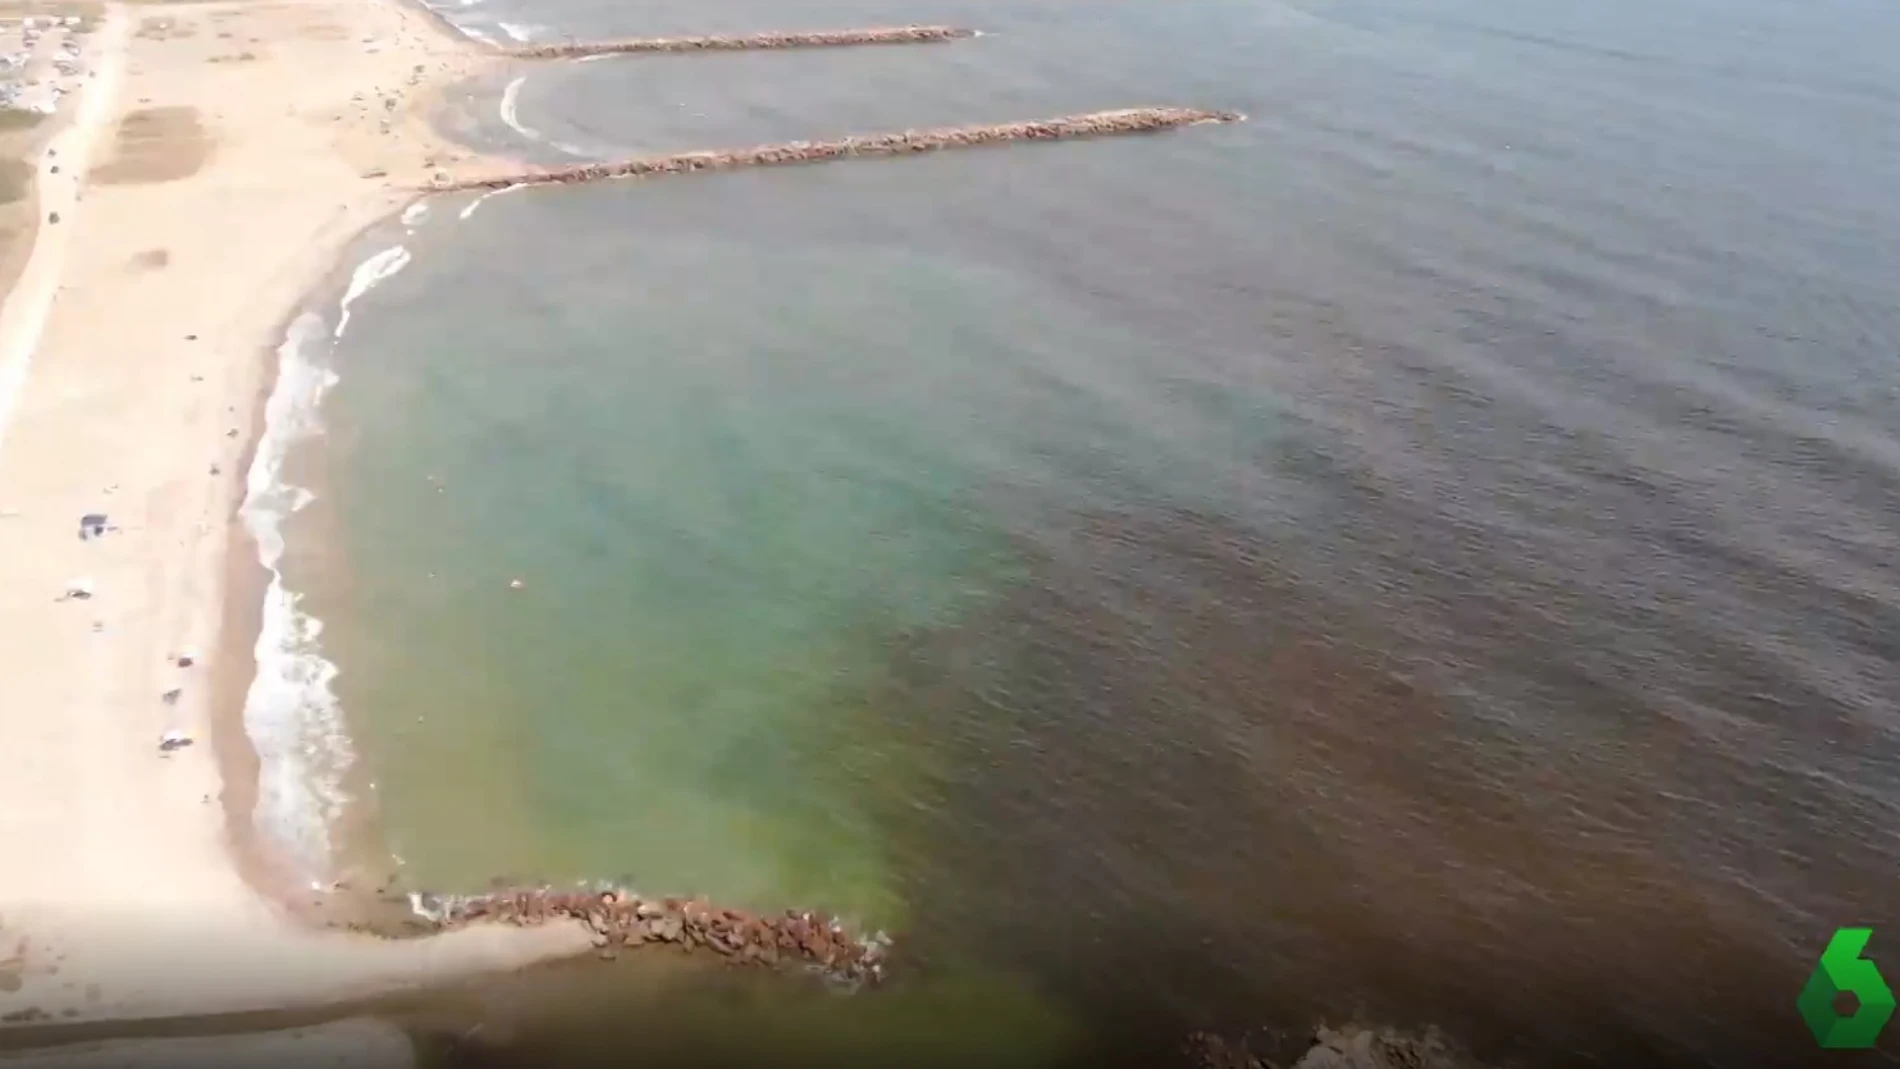 Imagen desde el aire de la mancha negra generada por las algas cerca de la costa.